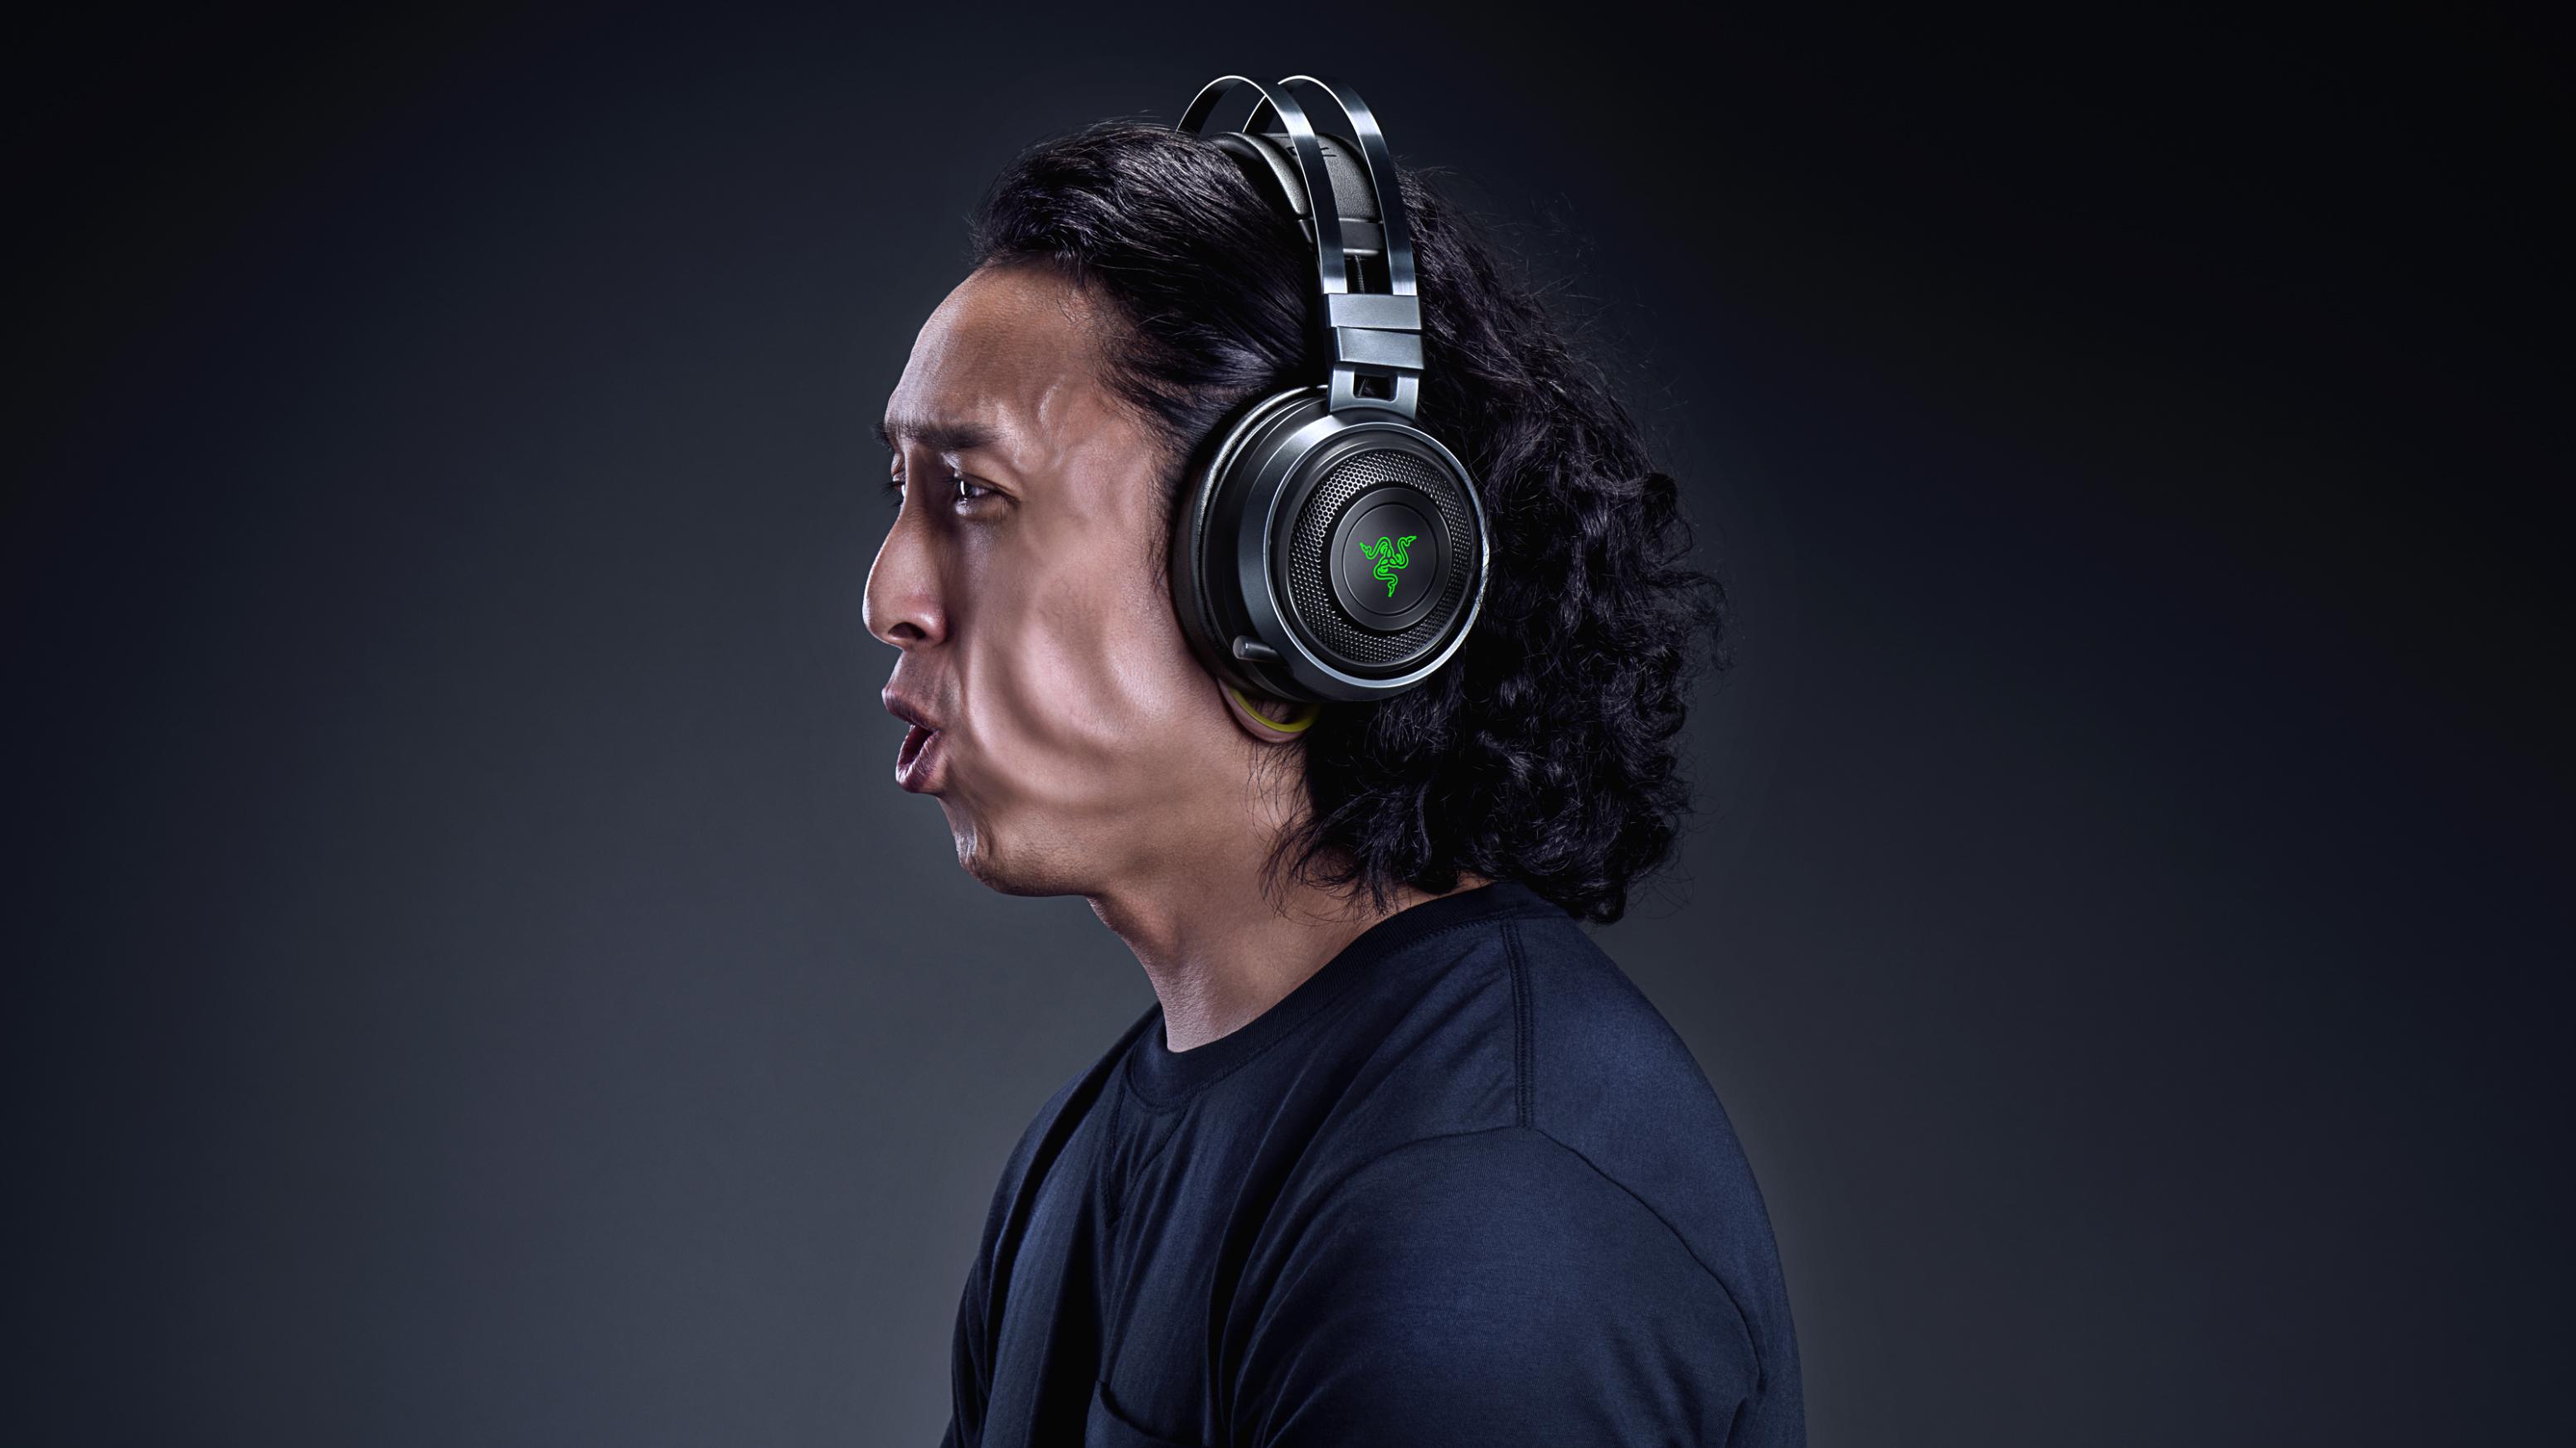 Razer’s new Nari Ultimate gaming headset features ‘lifelike’ haptic feedback